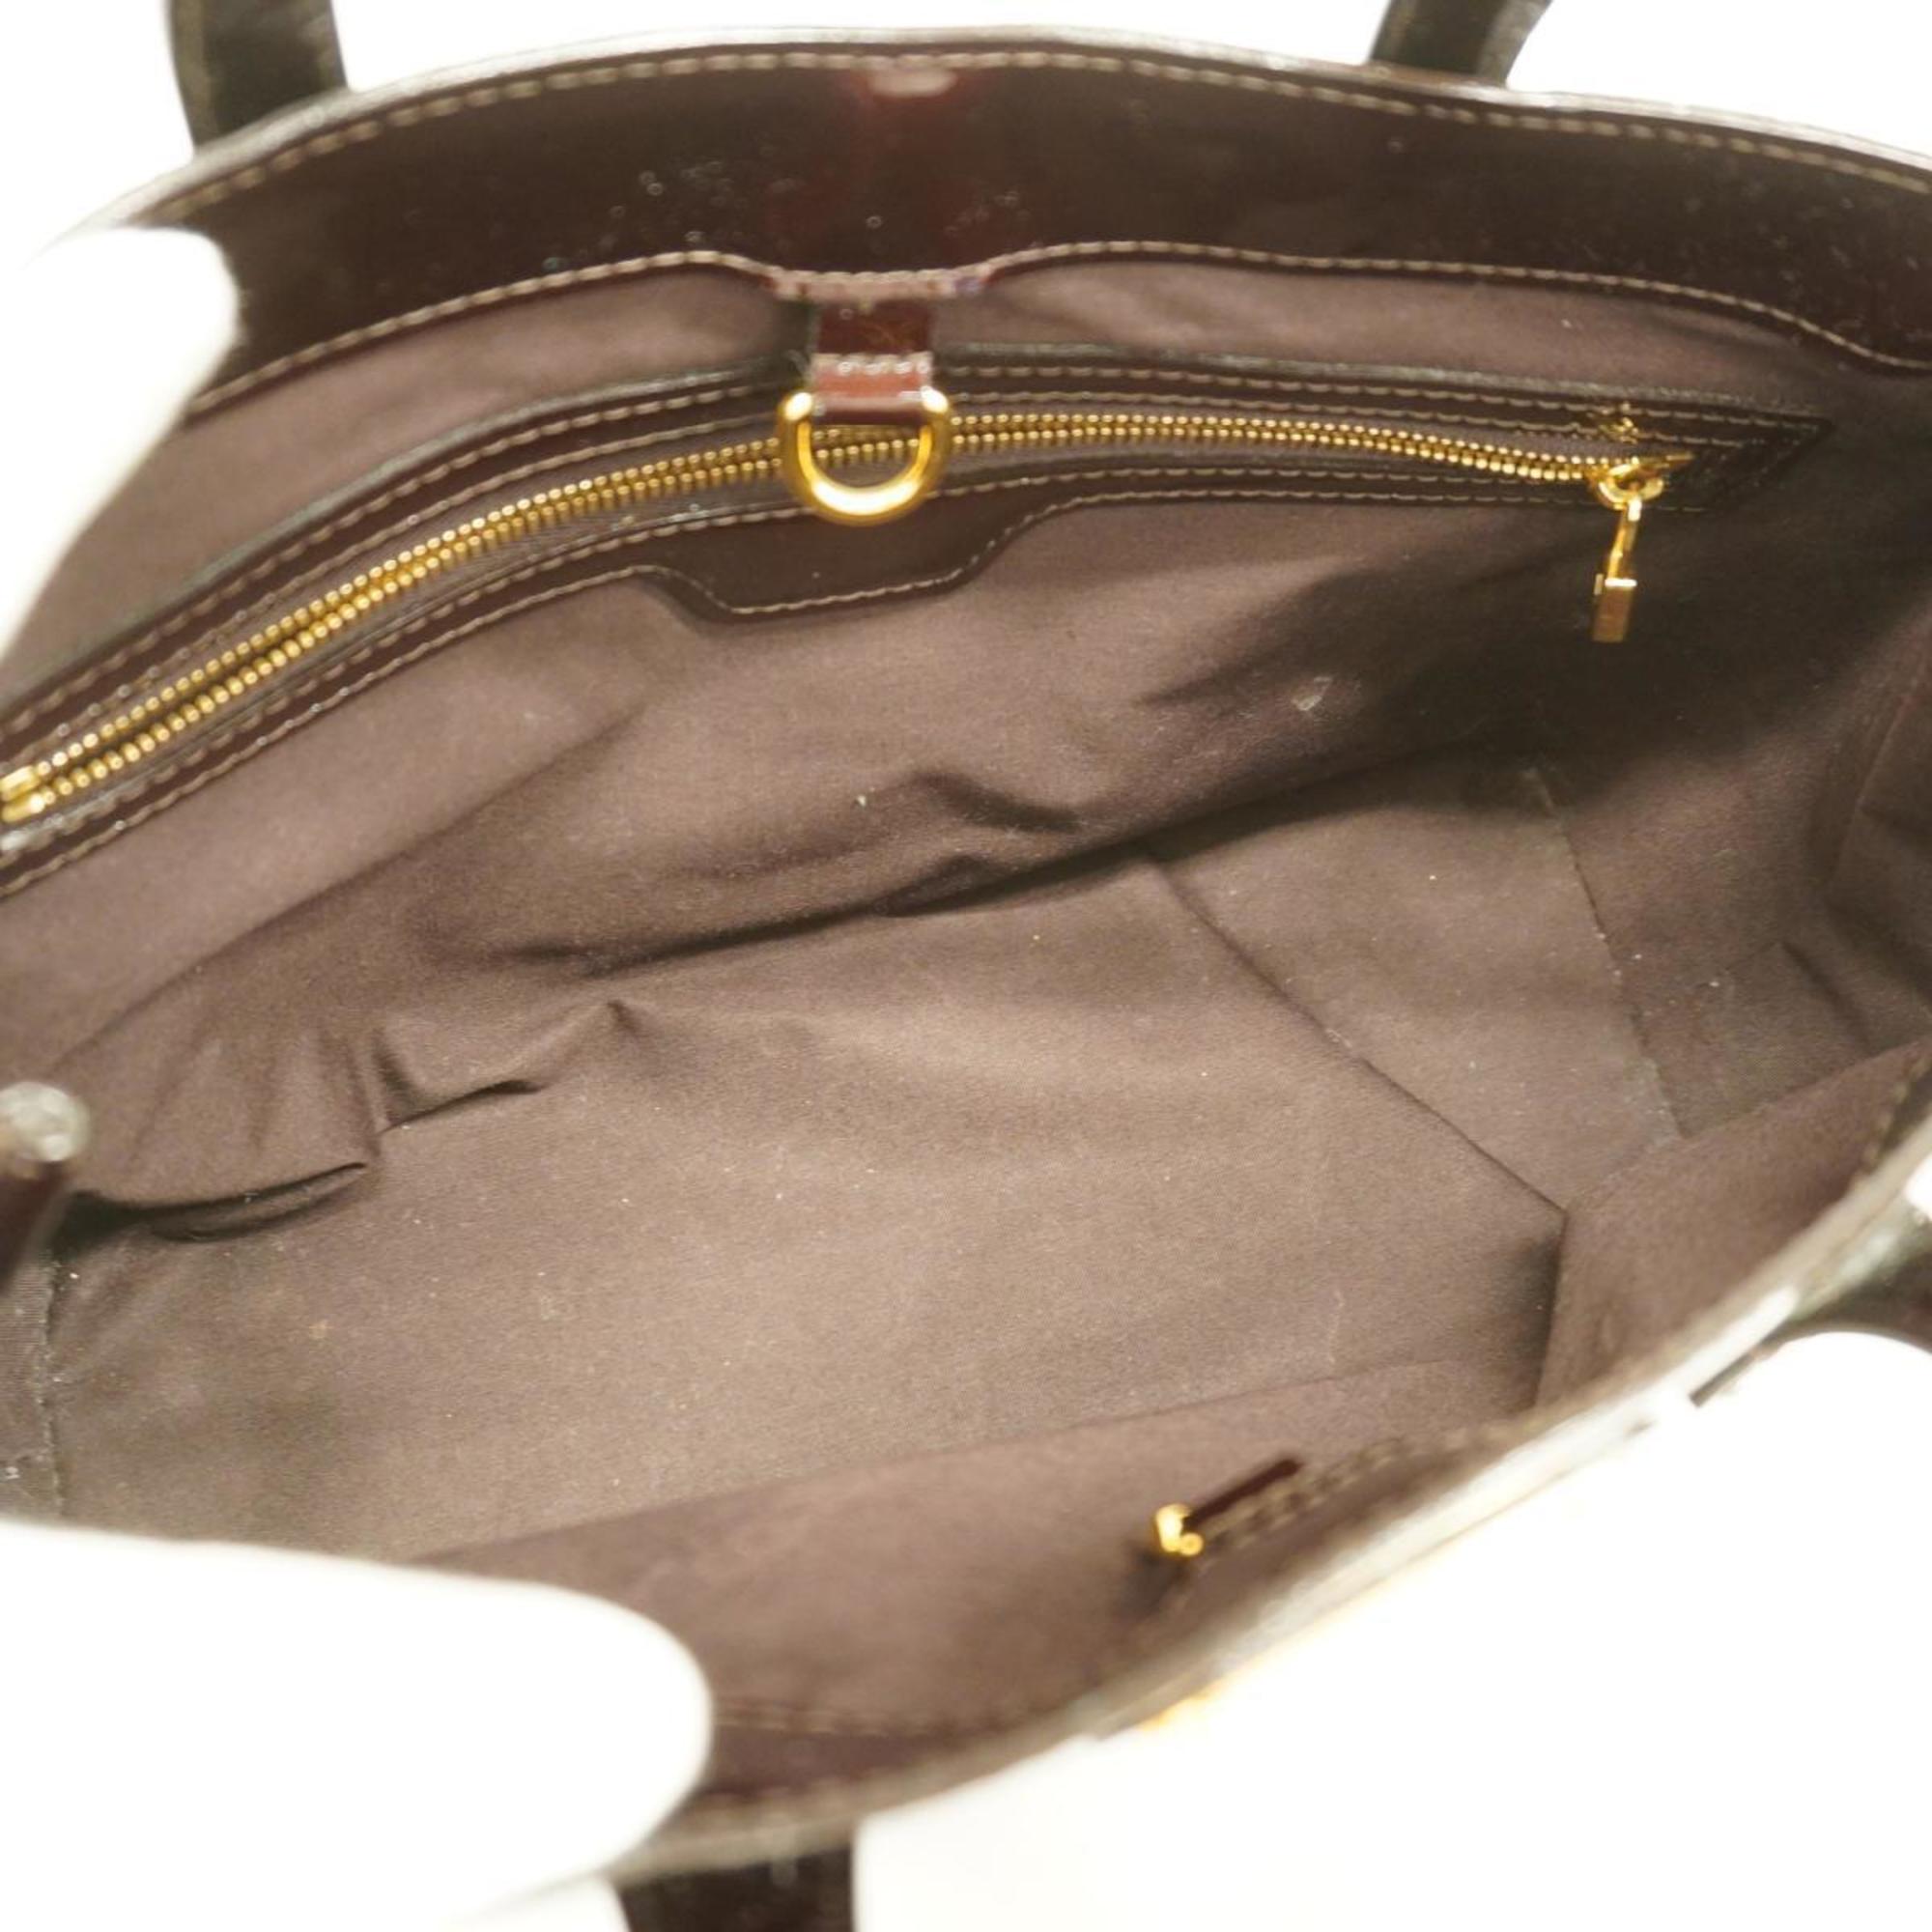 Louis Vuitton Handbag Vernis Wilshire PM M93641 Amaranth Women's